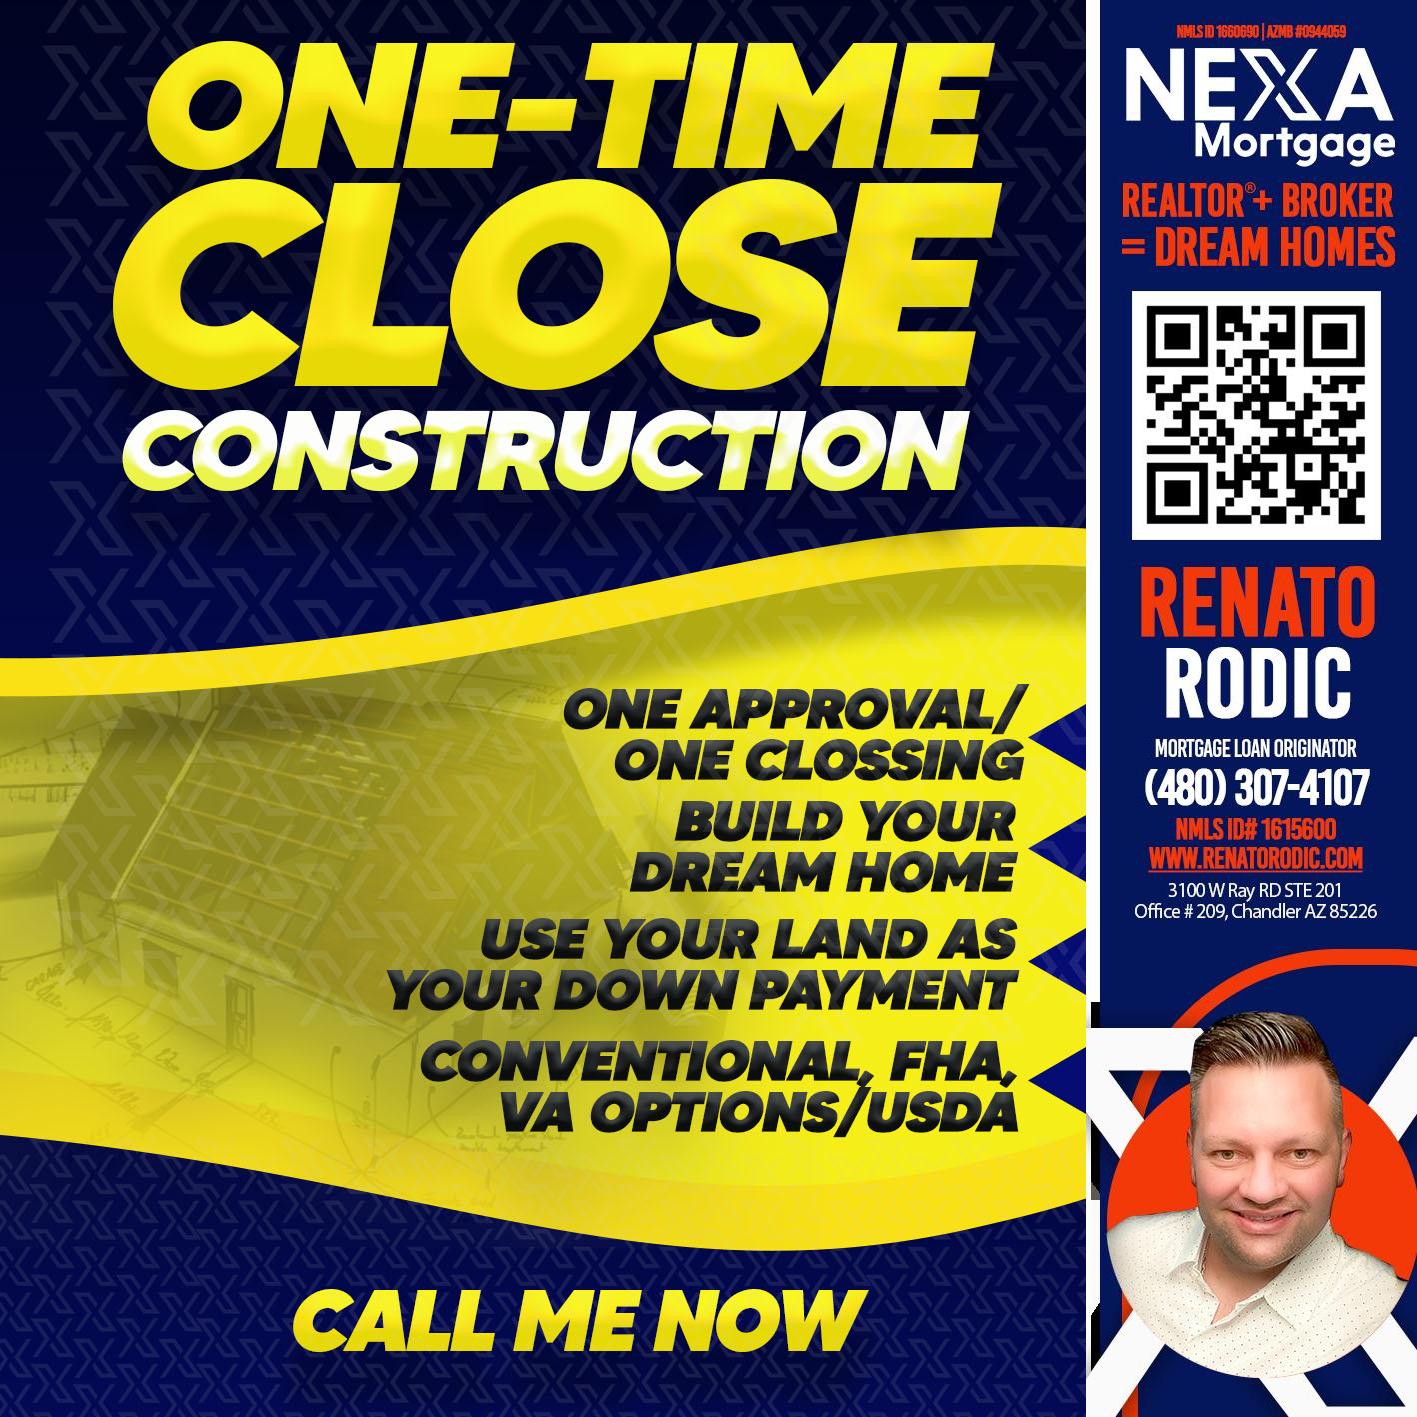 ONE TIME CLOSE - Renato Rodic -Mortgage Loan Originator